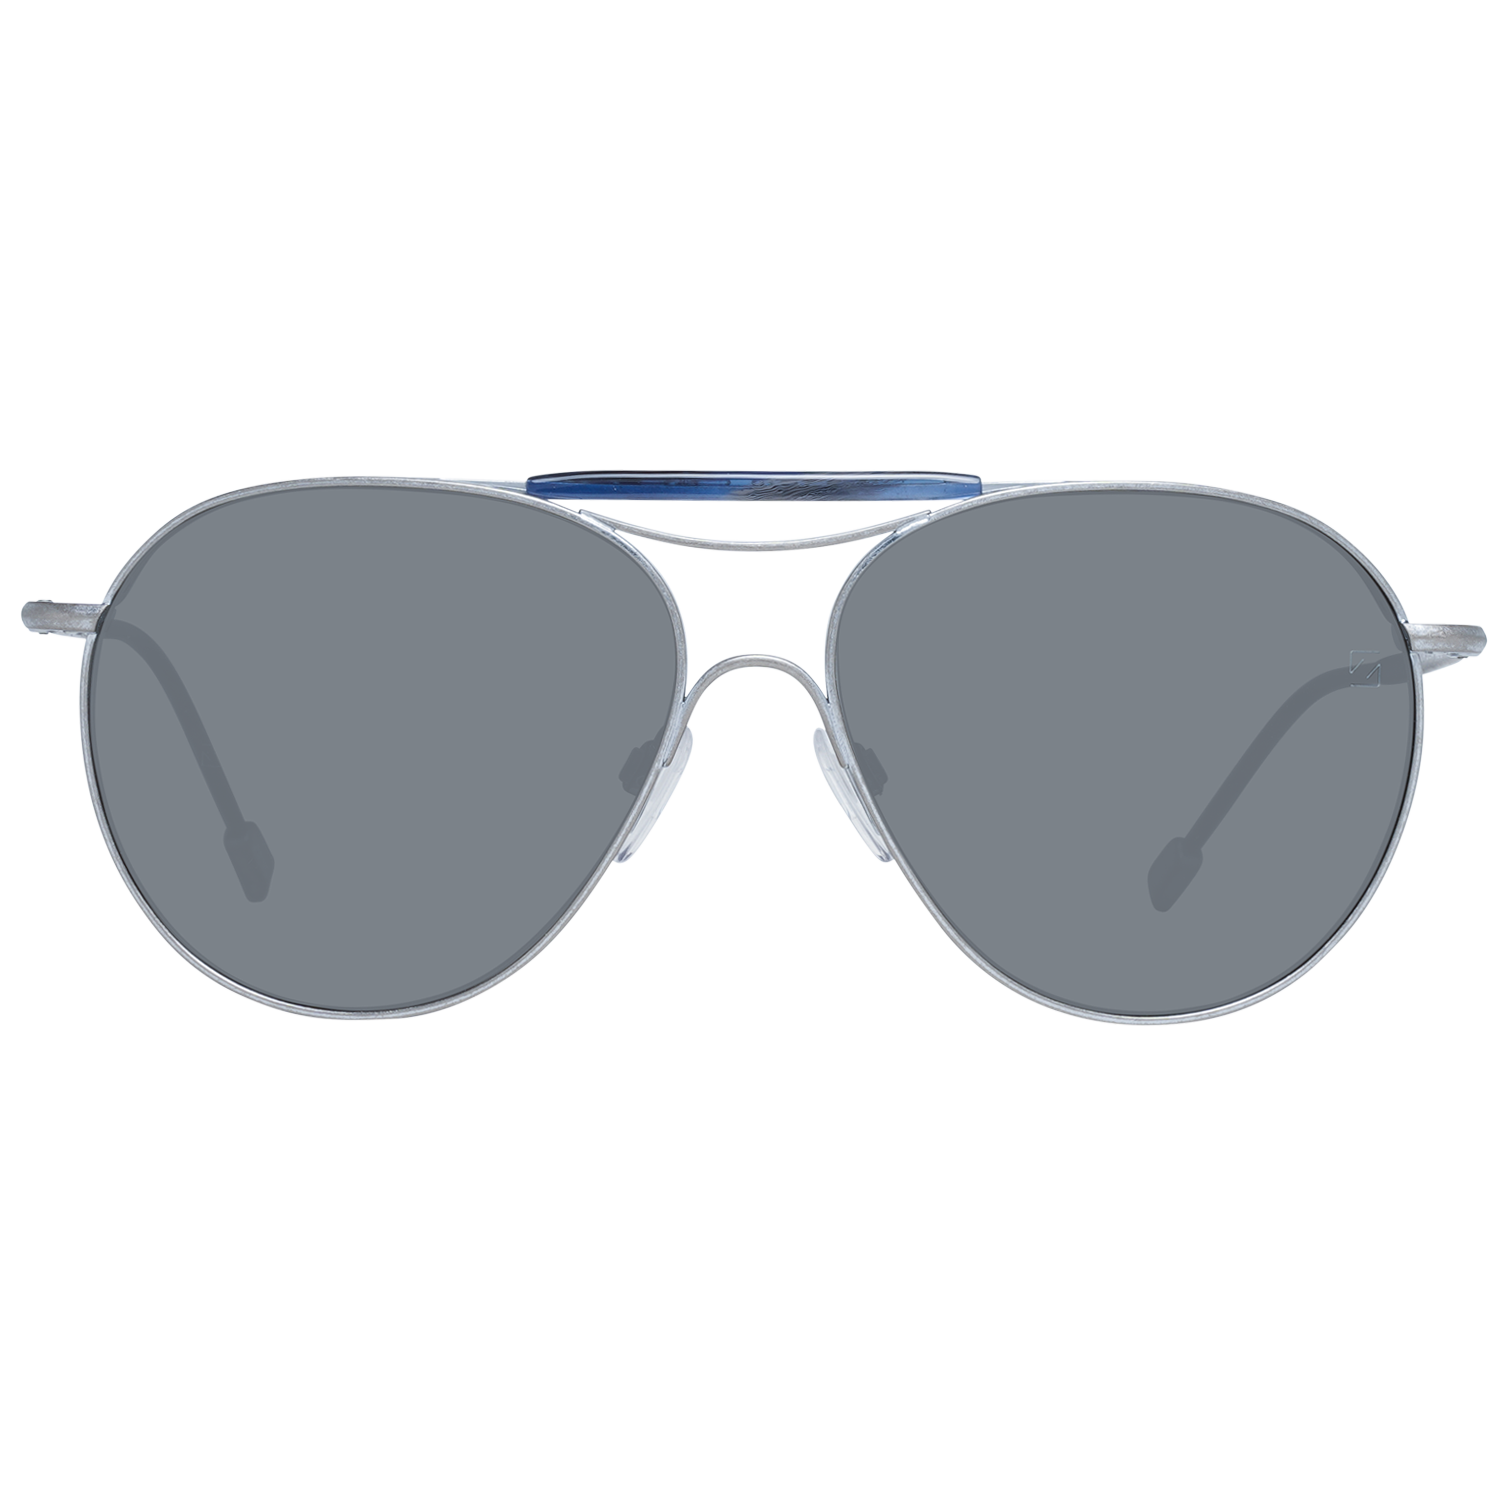 Zegna Couture Sunglasses Zegna Couture Sunglasses ZC0021 57 17A Titanium Eyeglasses Eyewear UK USA Australia 